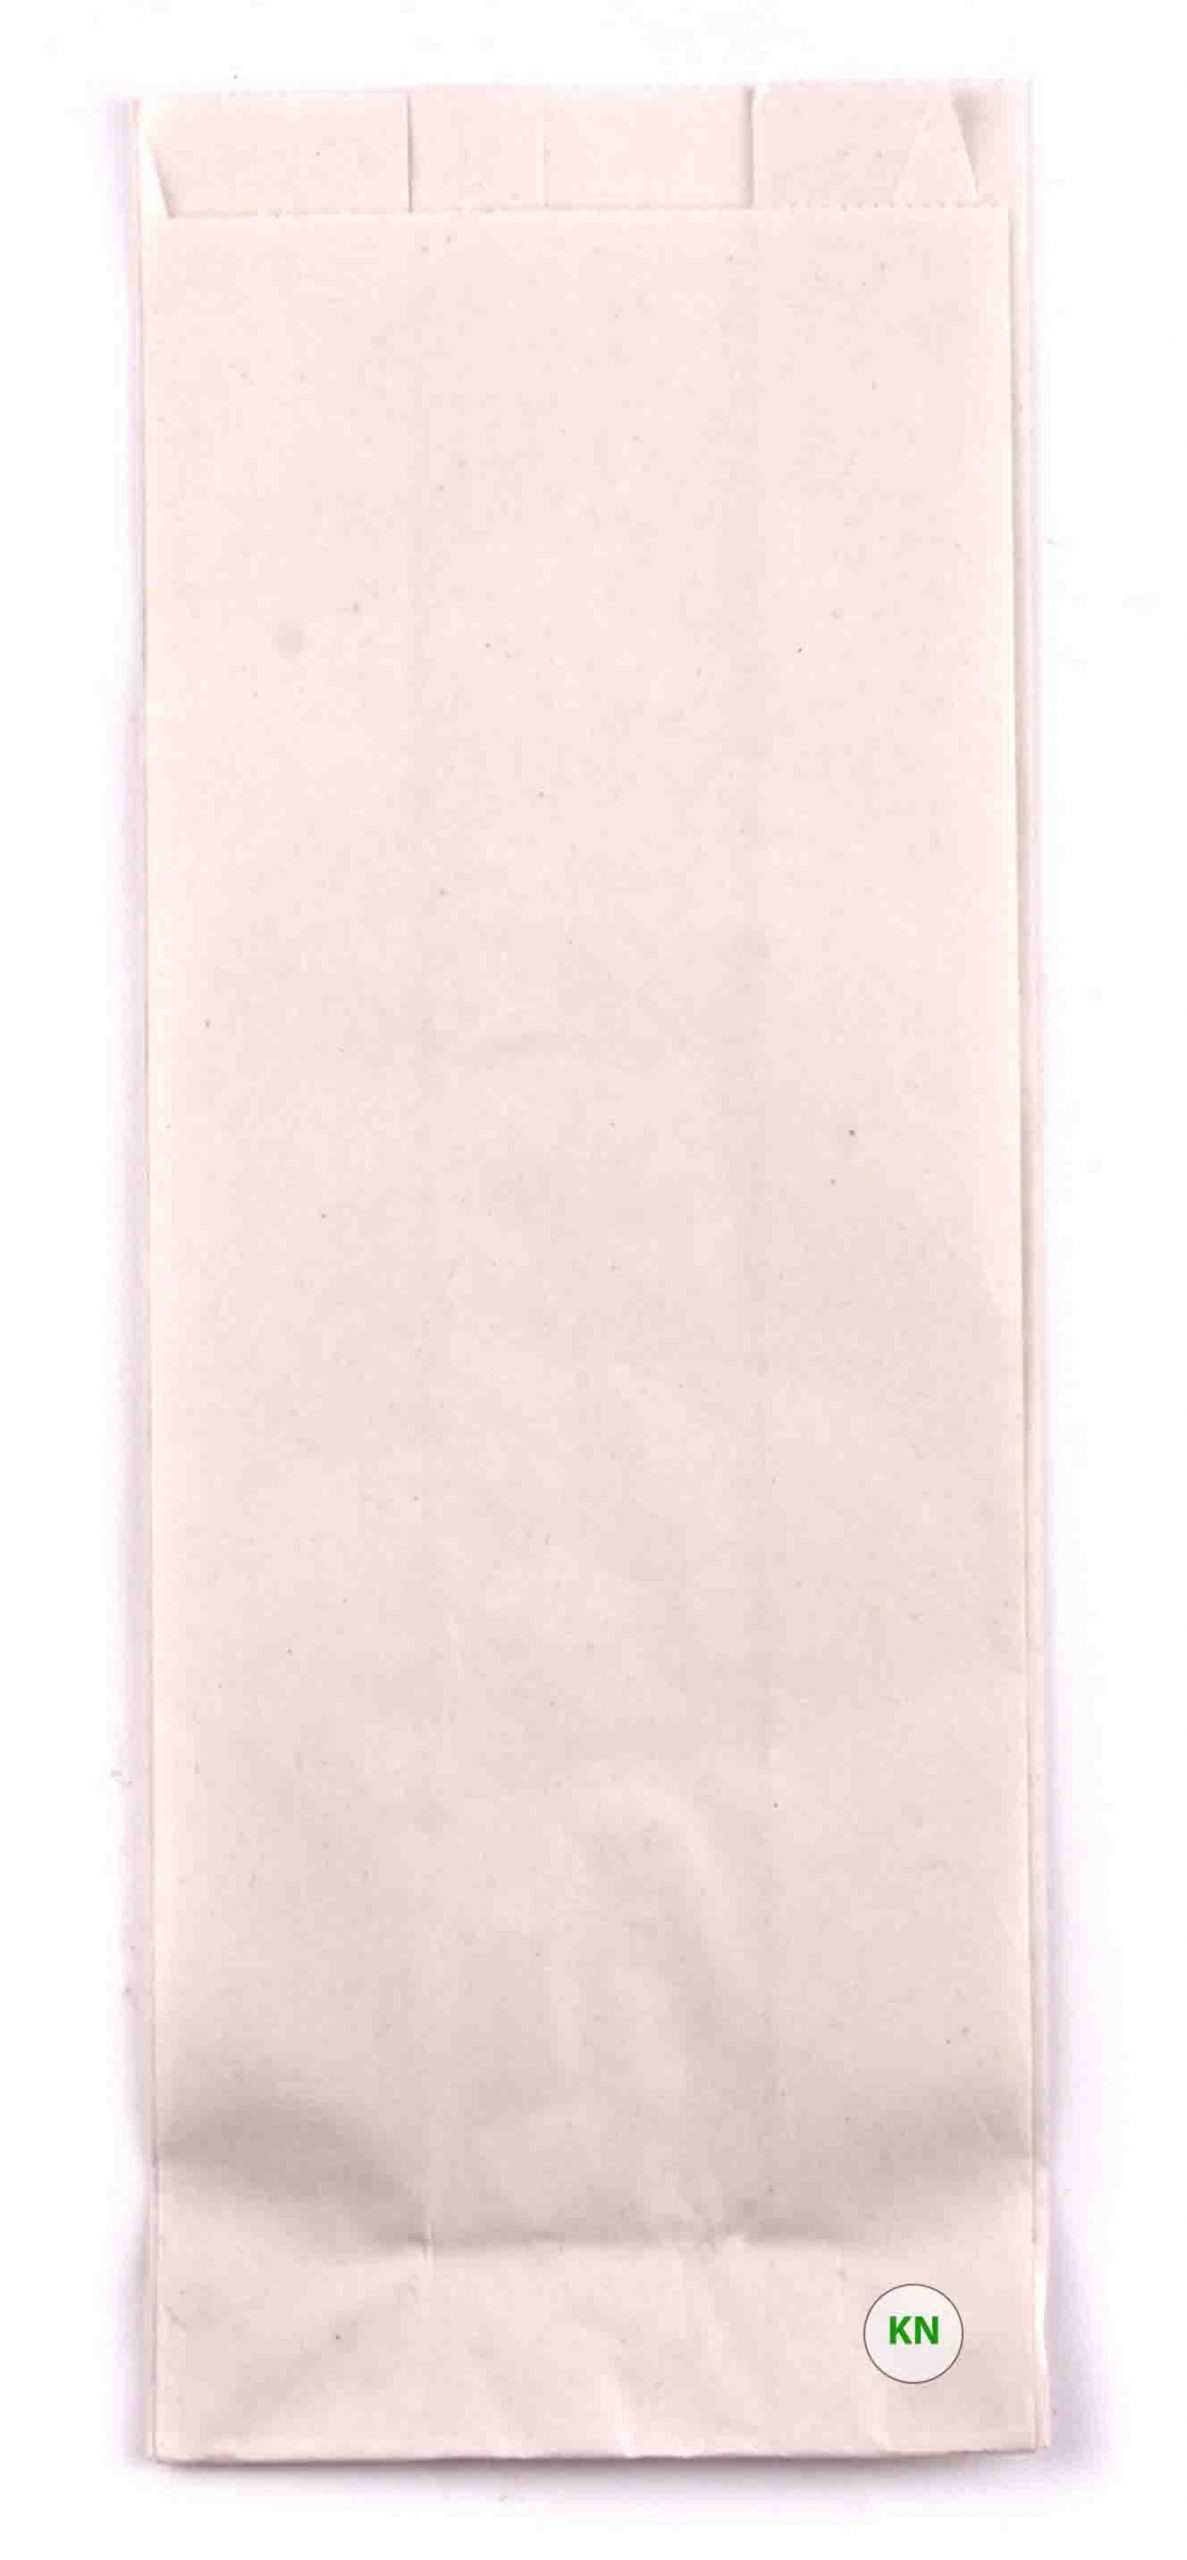 Пакет бумажный белый для французского хот-дога, 200 х 70 мм